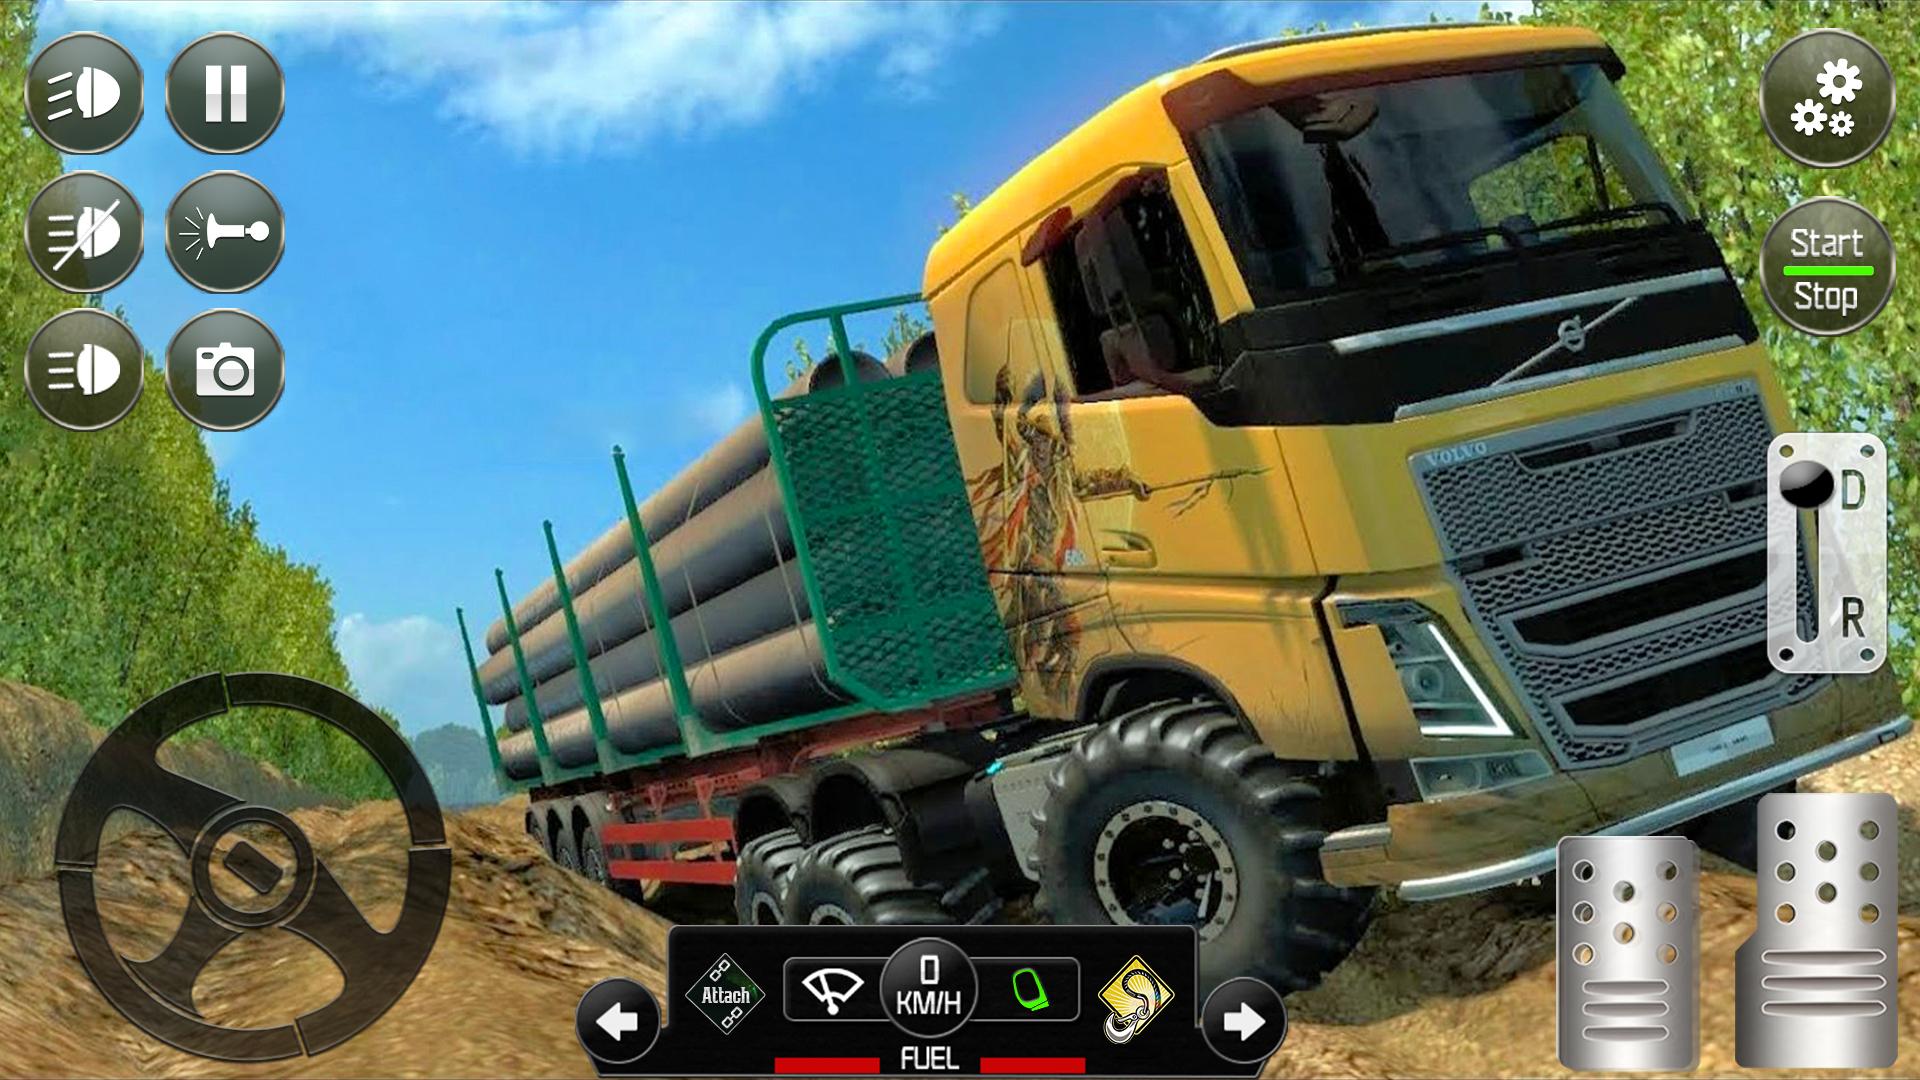 Игры внедорожники симулятор. Симулятор грузовиков Offroad 3. Симулятор внедорожника на андроид. Игра симулятор грязи. Симулятор грязи внедорожник.